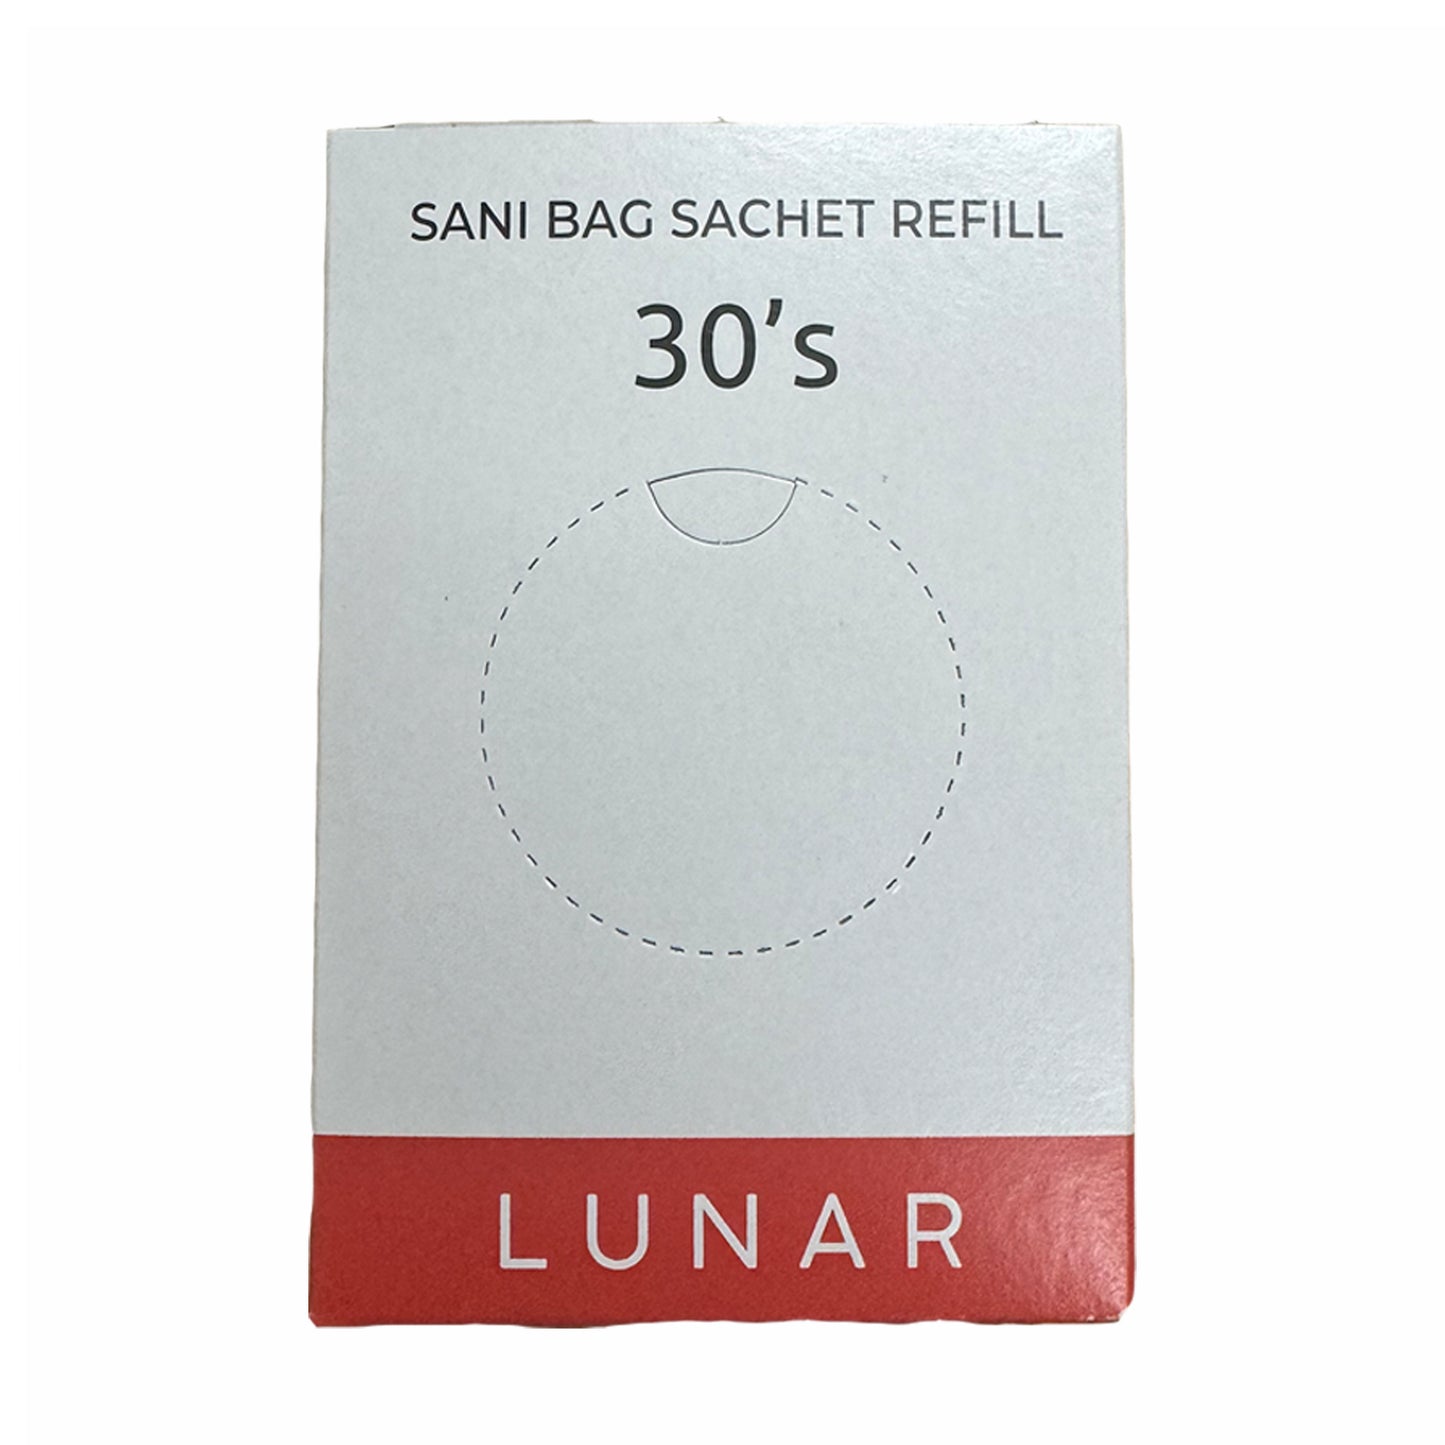 Sanitary Bag Sachet Refill (Case of 24)